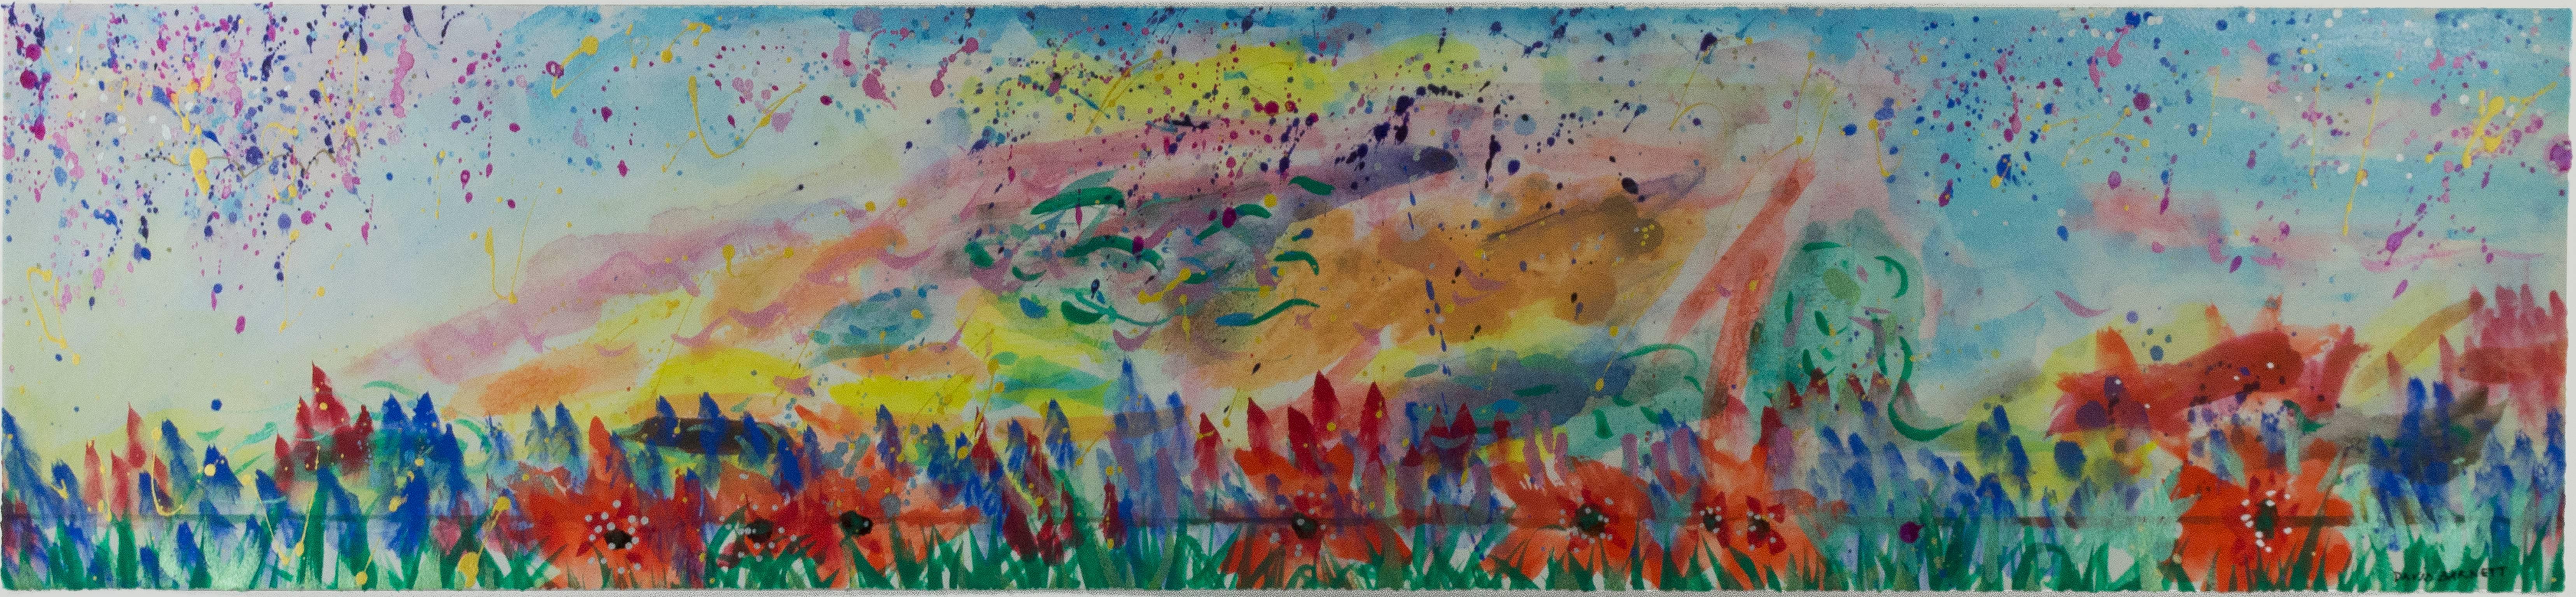 "Abstrakt mit Gras und Mohnblumen II" ist ein Original-Aquarell, schillerndes Acryl und Tusche auf Aquarellpapier von David Barnett. Der Künstler hat das Werk unten rechts signiert. Dieses Werk kann zusammen mit "Abstrakt mit Gras und Mohnblumen I"